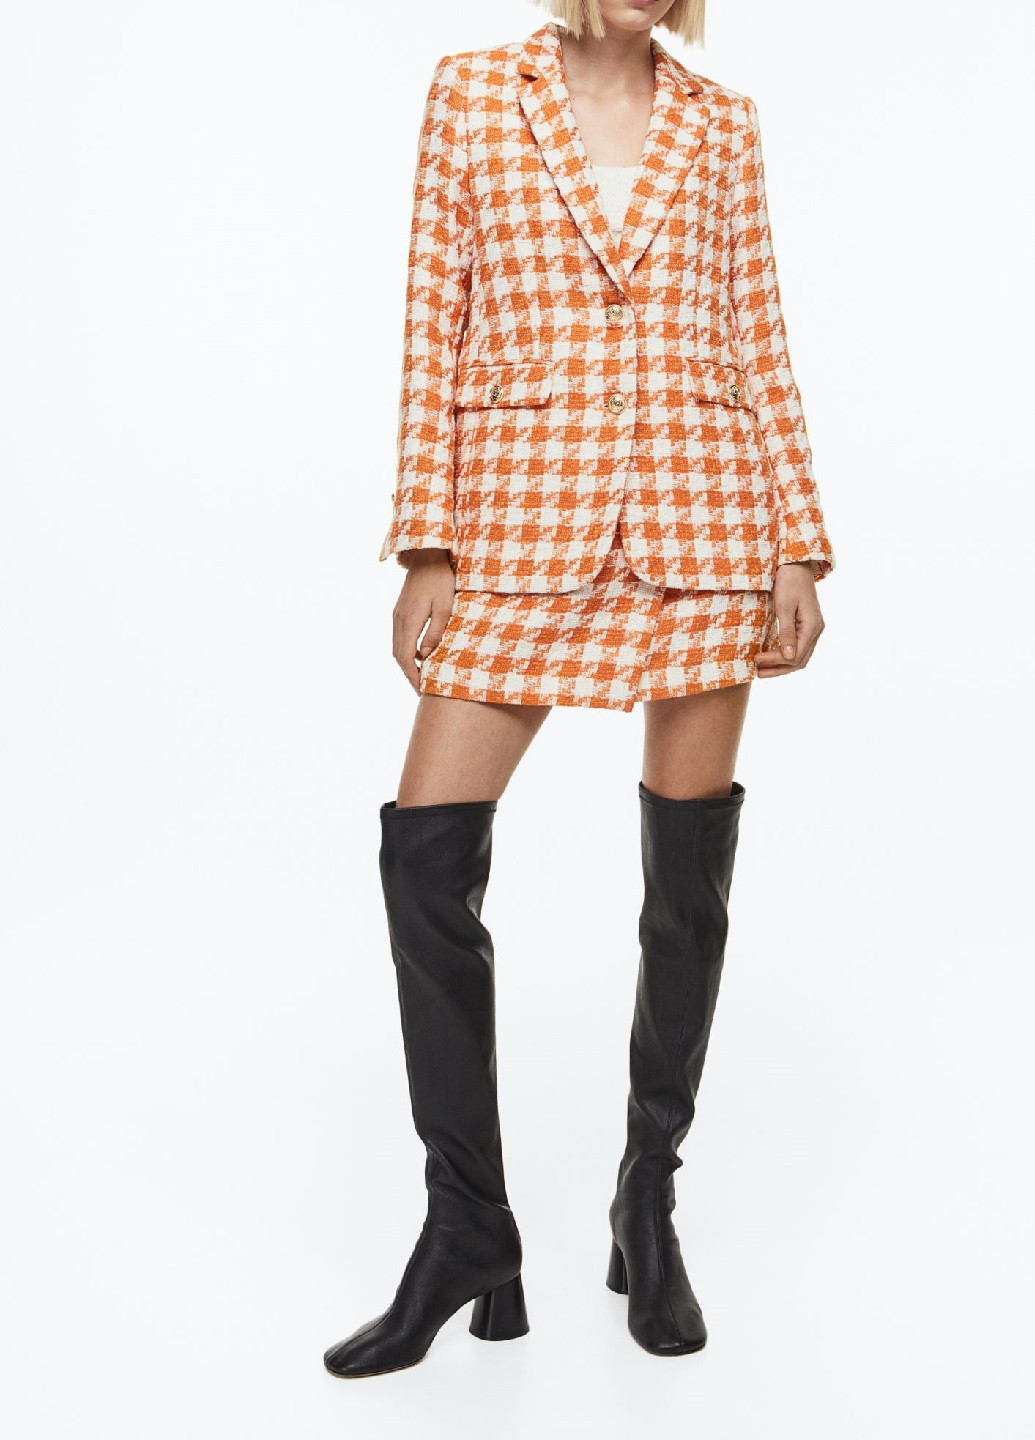 Оранжевый женский жакет H&M с узором пье-де-пуль «гусиная лапка» - демисезонный